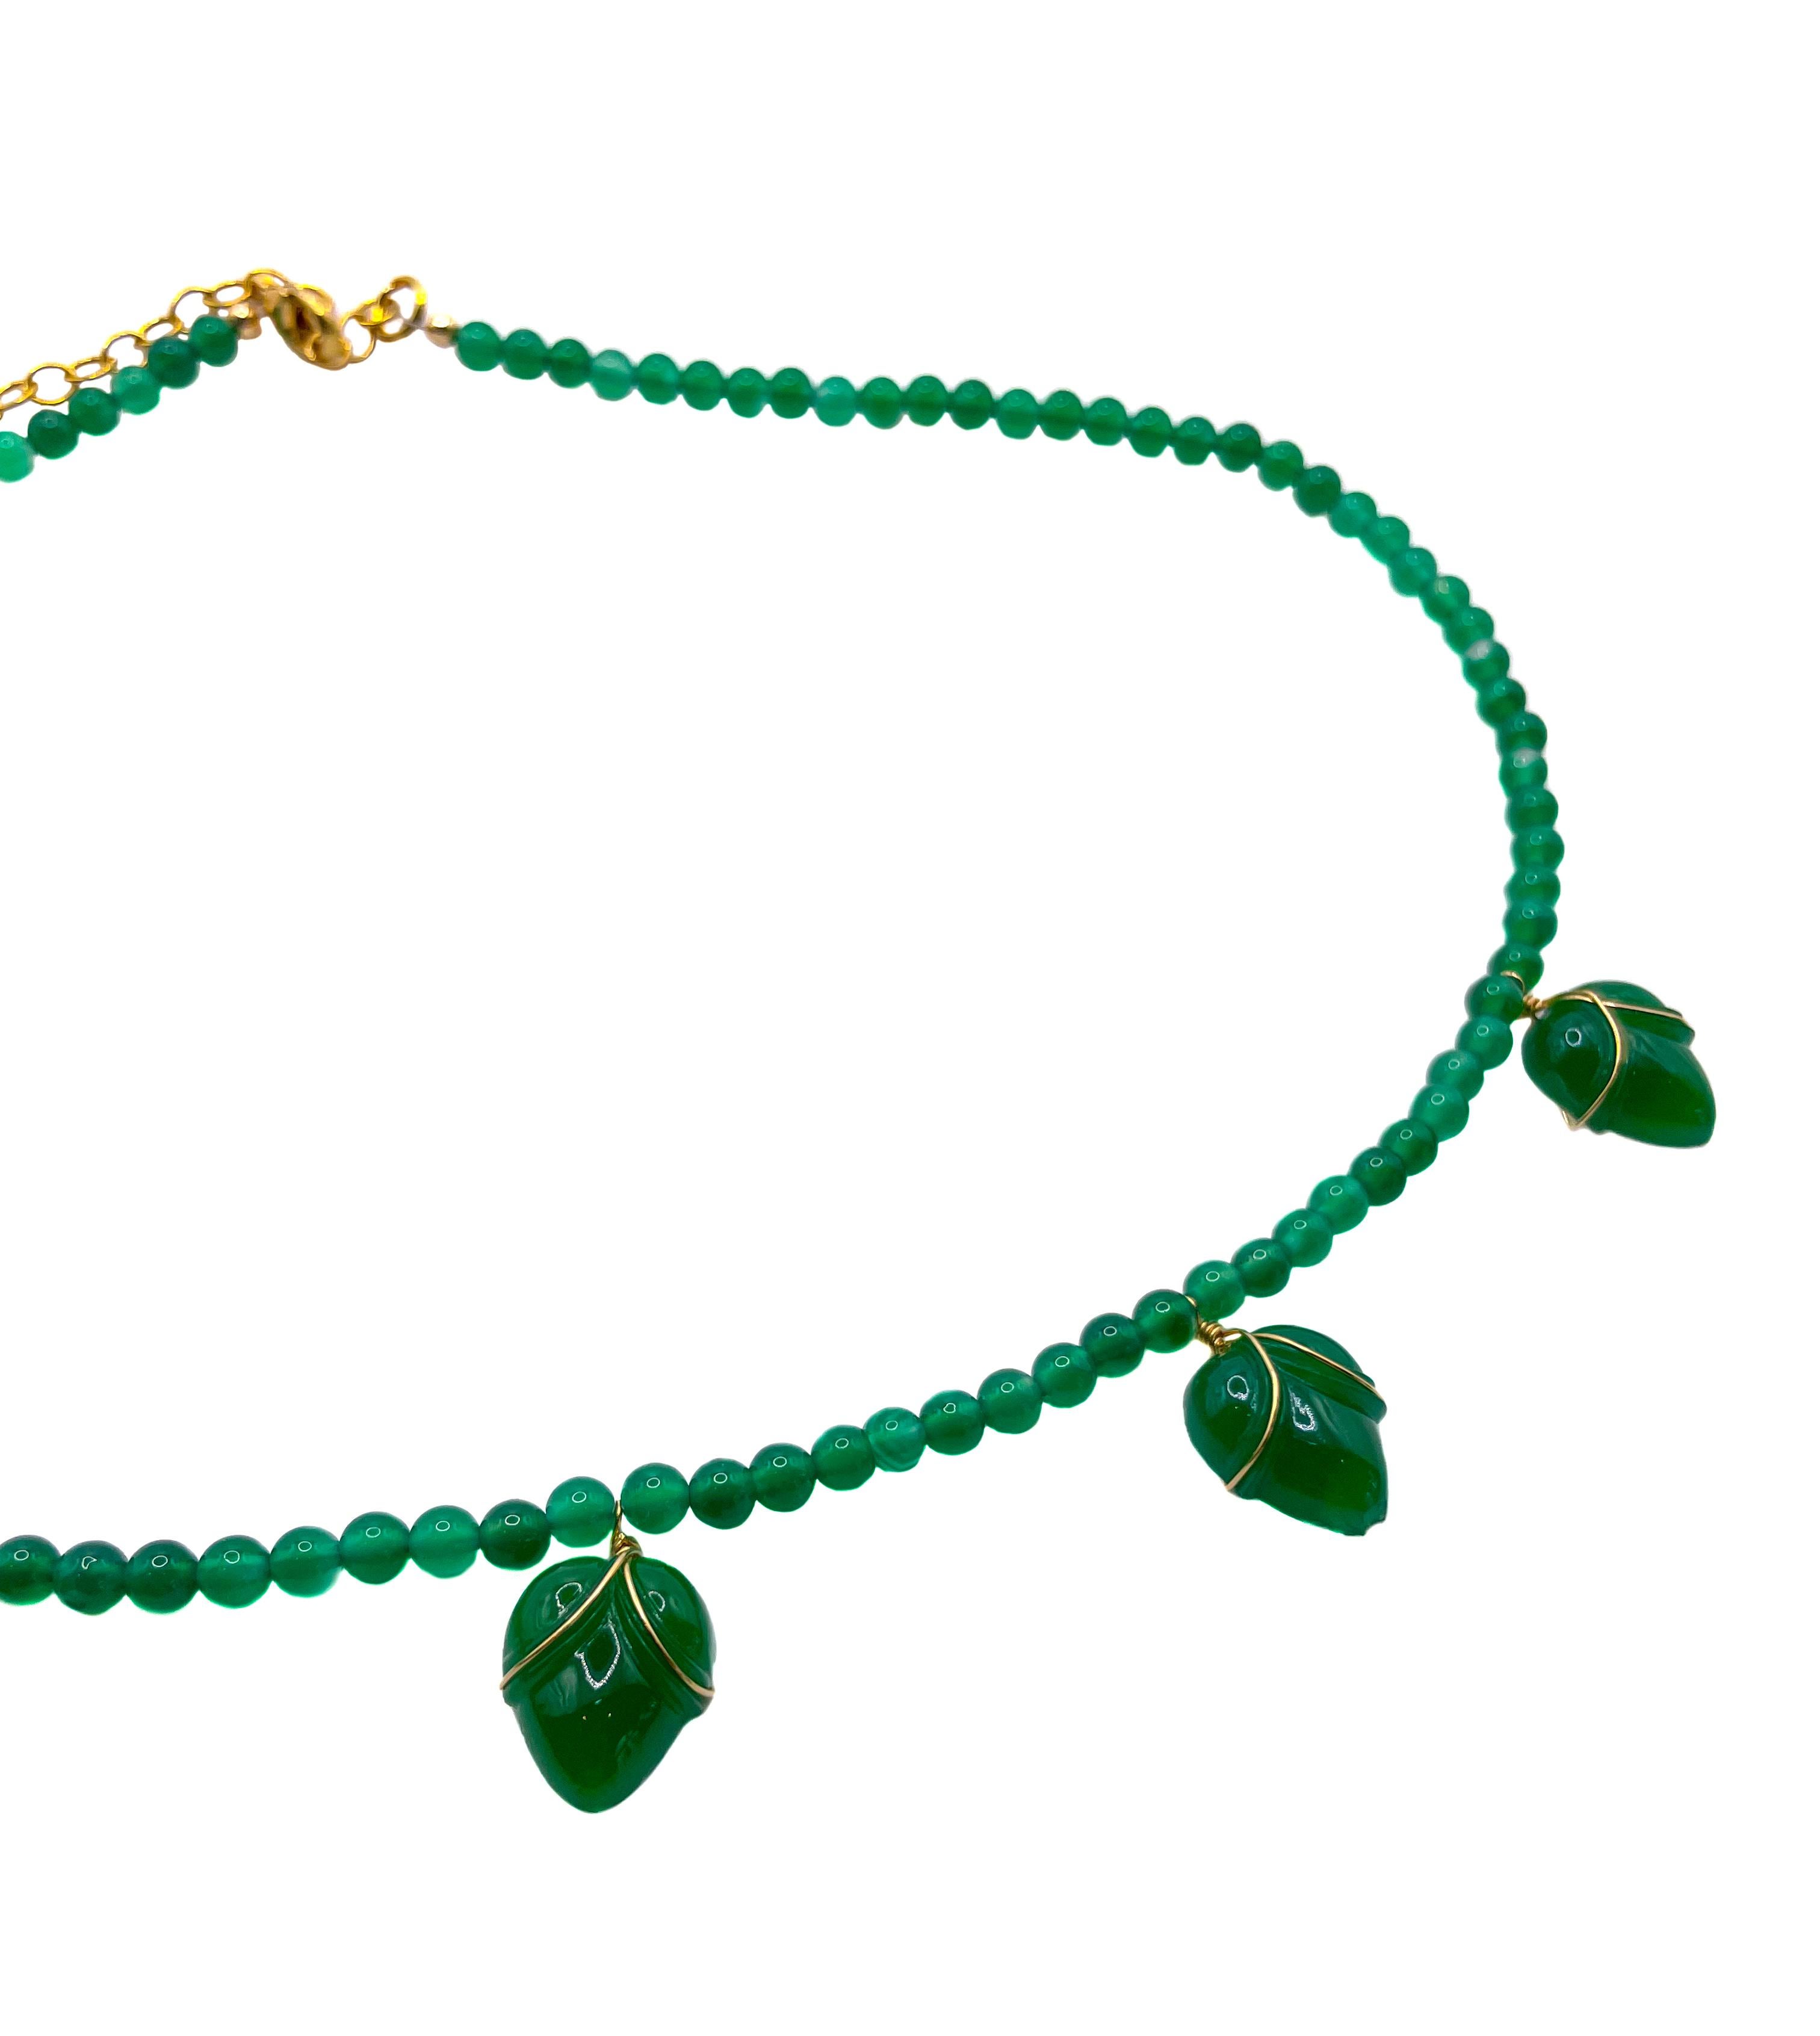 Diese einzigartige, auffällige smaragdgrüne Perlenkette zeigt fünf gläserne Blütenknospen aus originalem Vintage-Glas aus der Tschechischen Republik der 1950er Jahre. Jede Glasblumenknospe ist einzeln mit goldgefülltem Draht umwickelt und zart durch